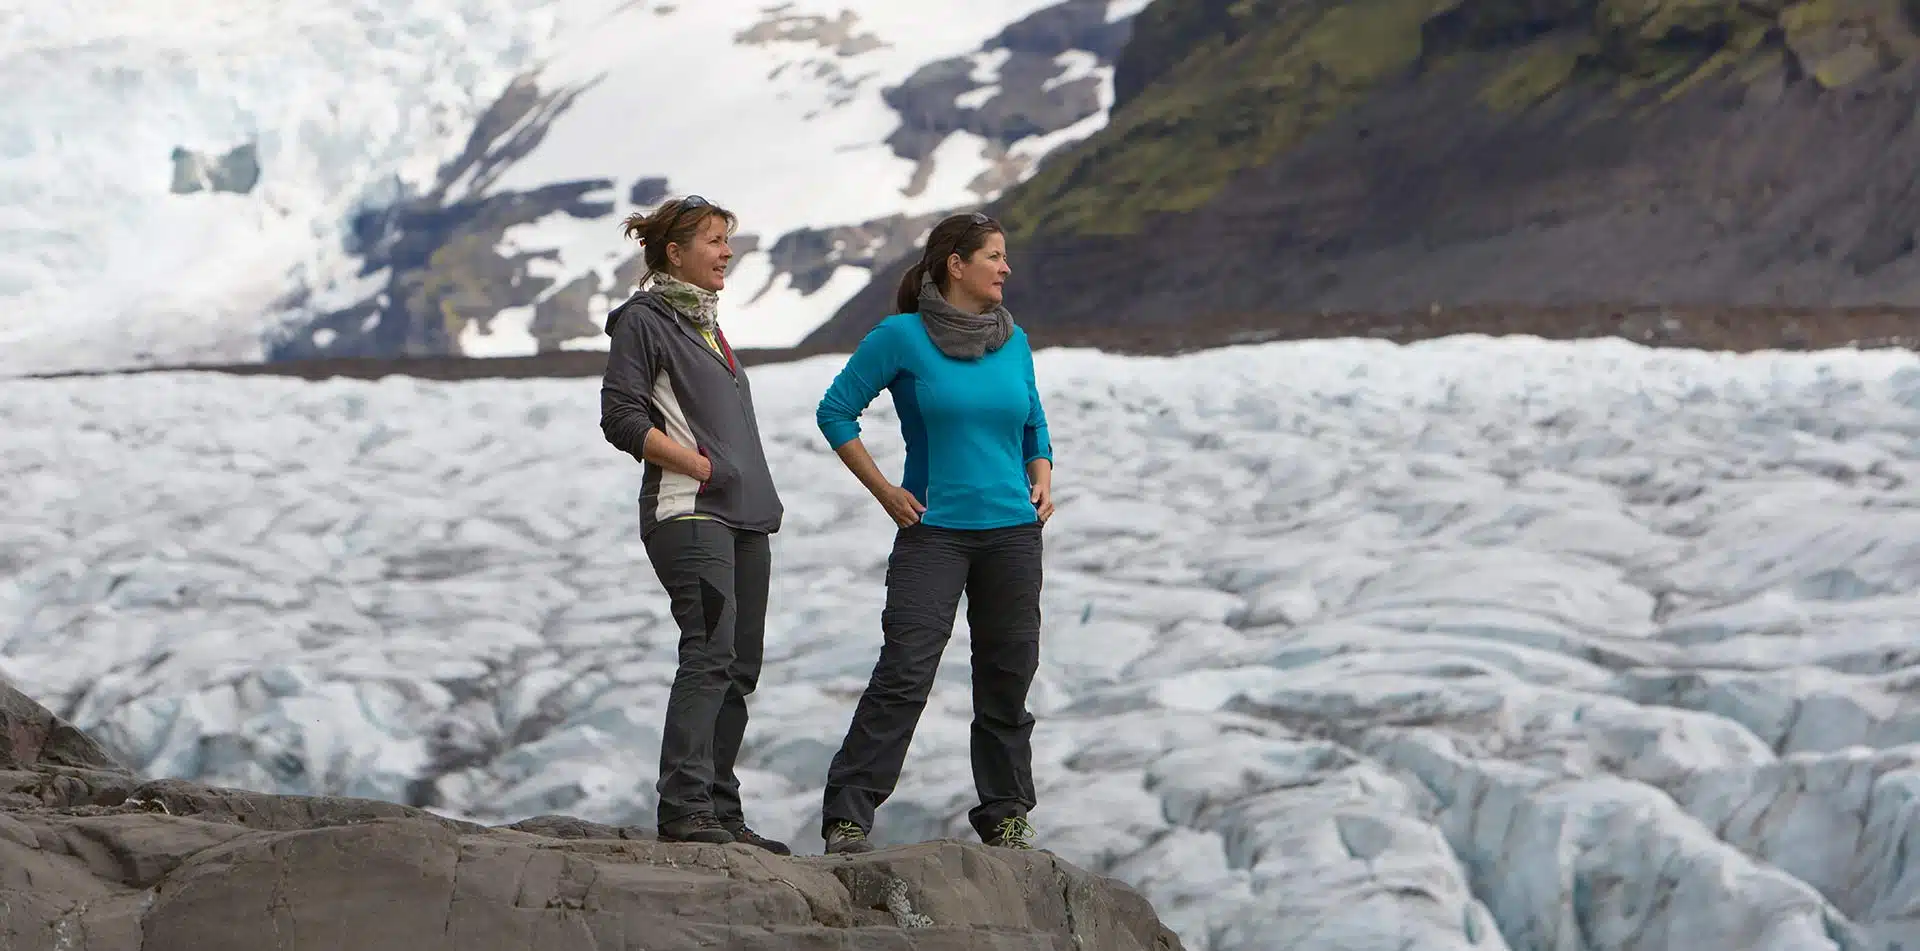 Women overlooking Glacier views in Iceland